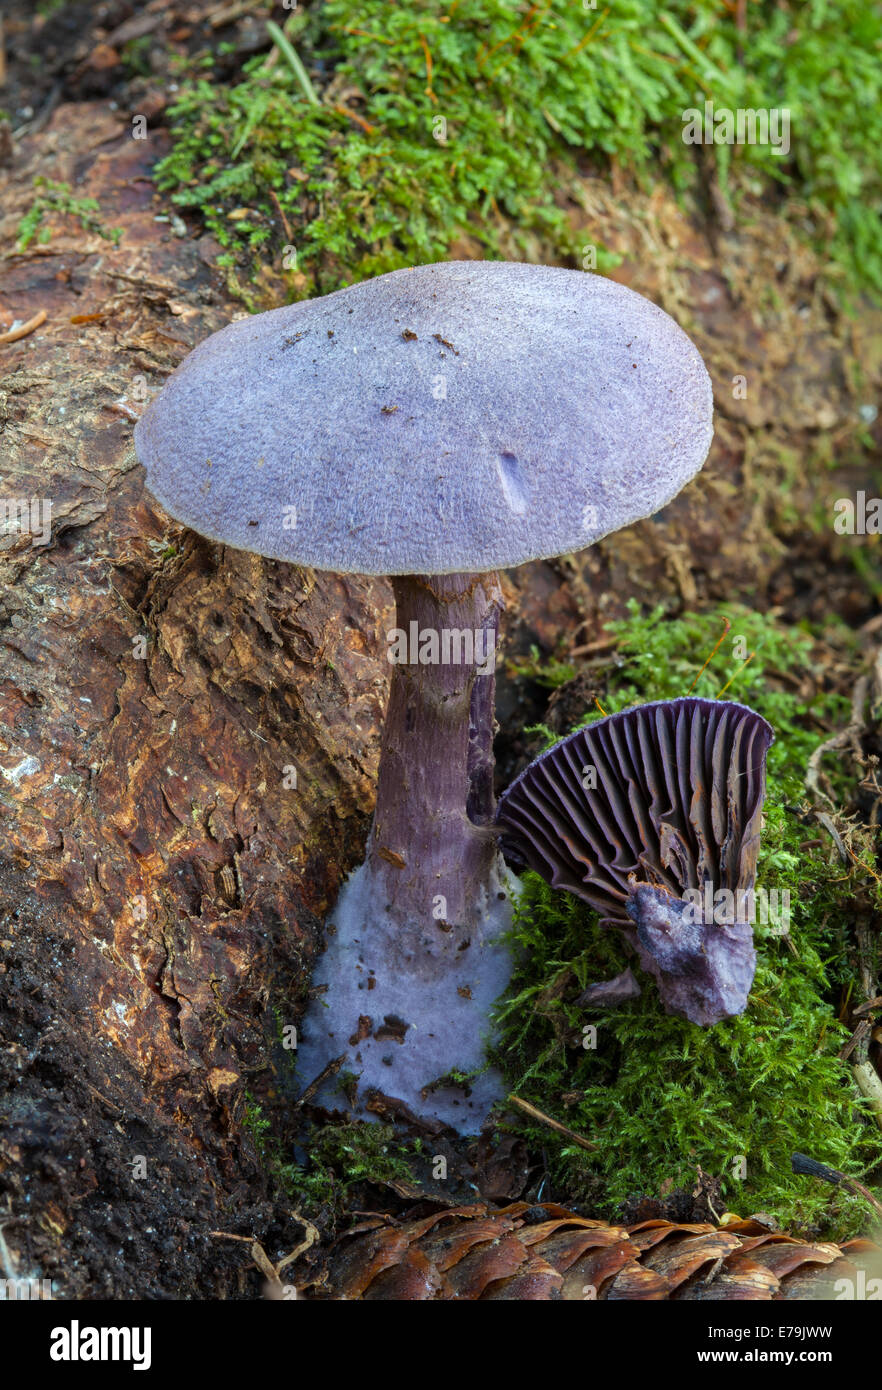 Cortinarius violaceus mushroom Stock Photo